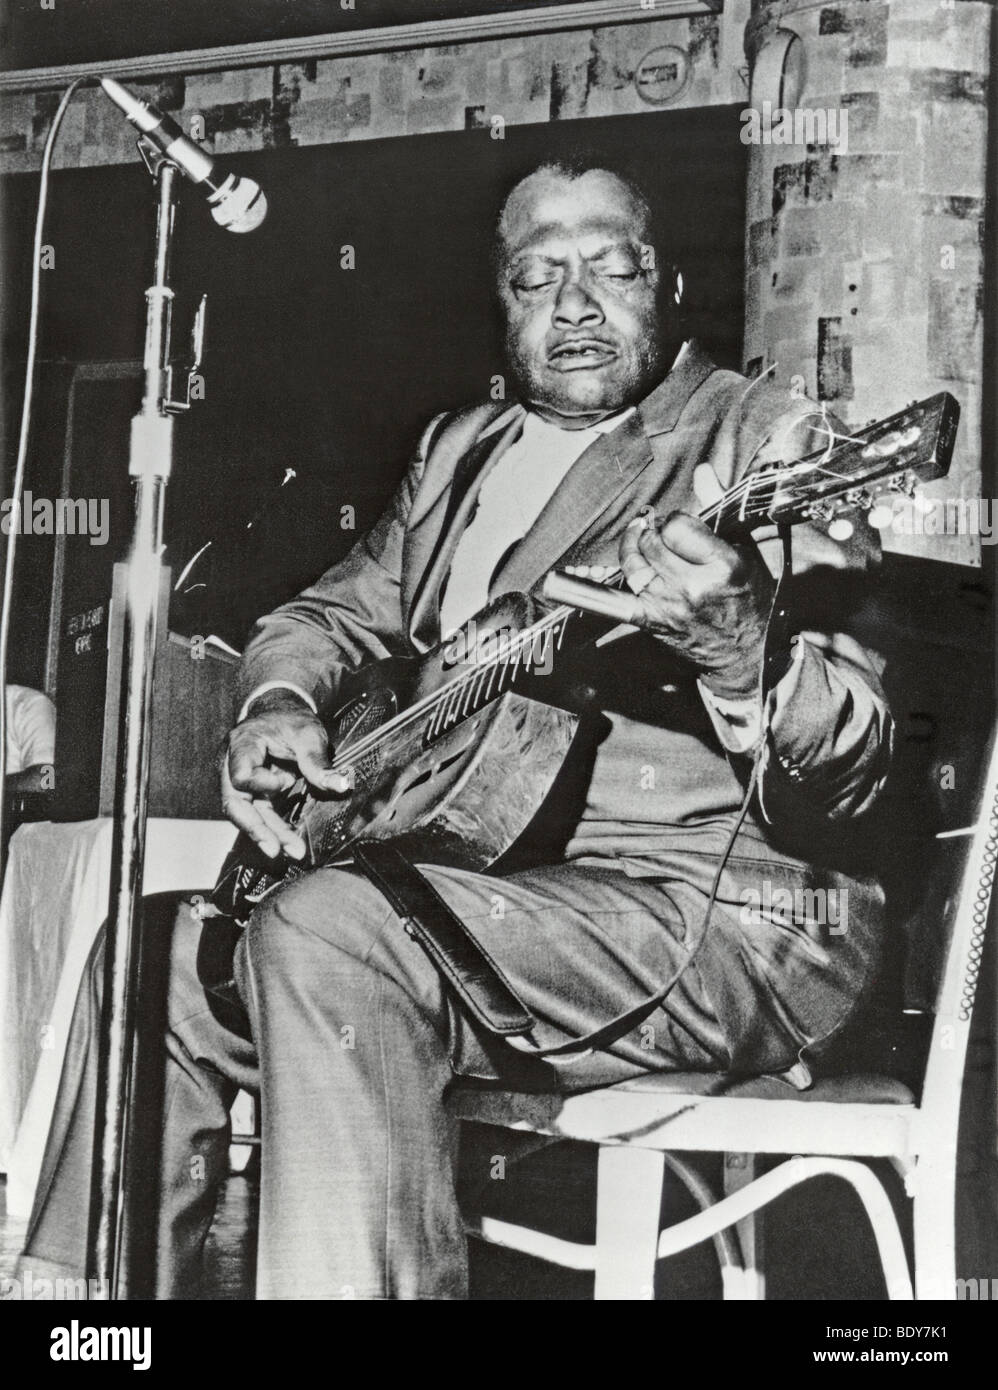 BUKKA WHITE - musicien de blues américain Banque D'Images